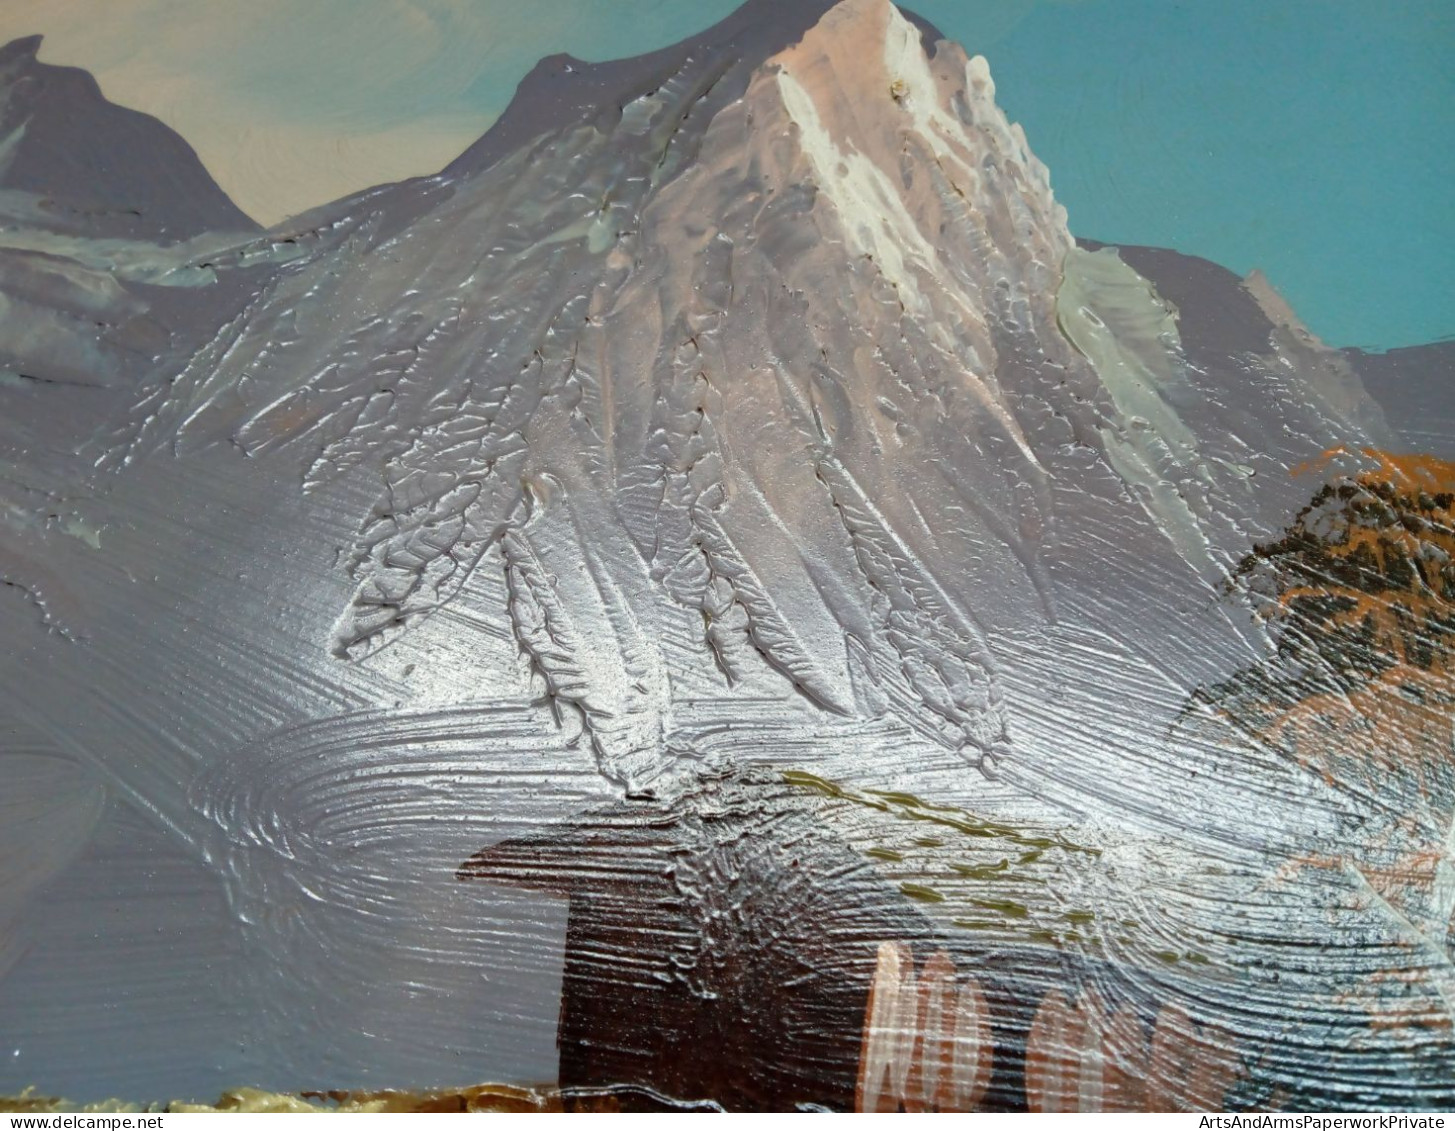 Paysage de montagne avec alpage et rivière/ Mountain landscape with mountain pasture and river